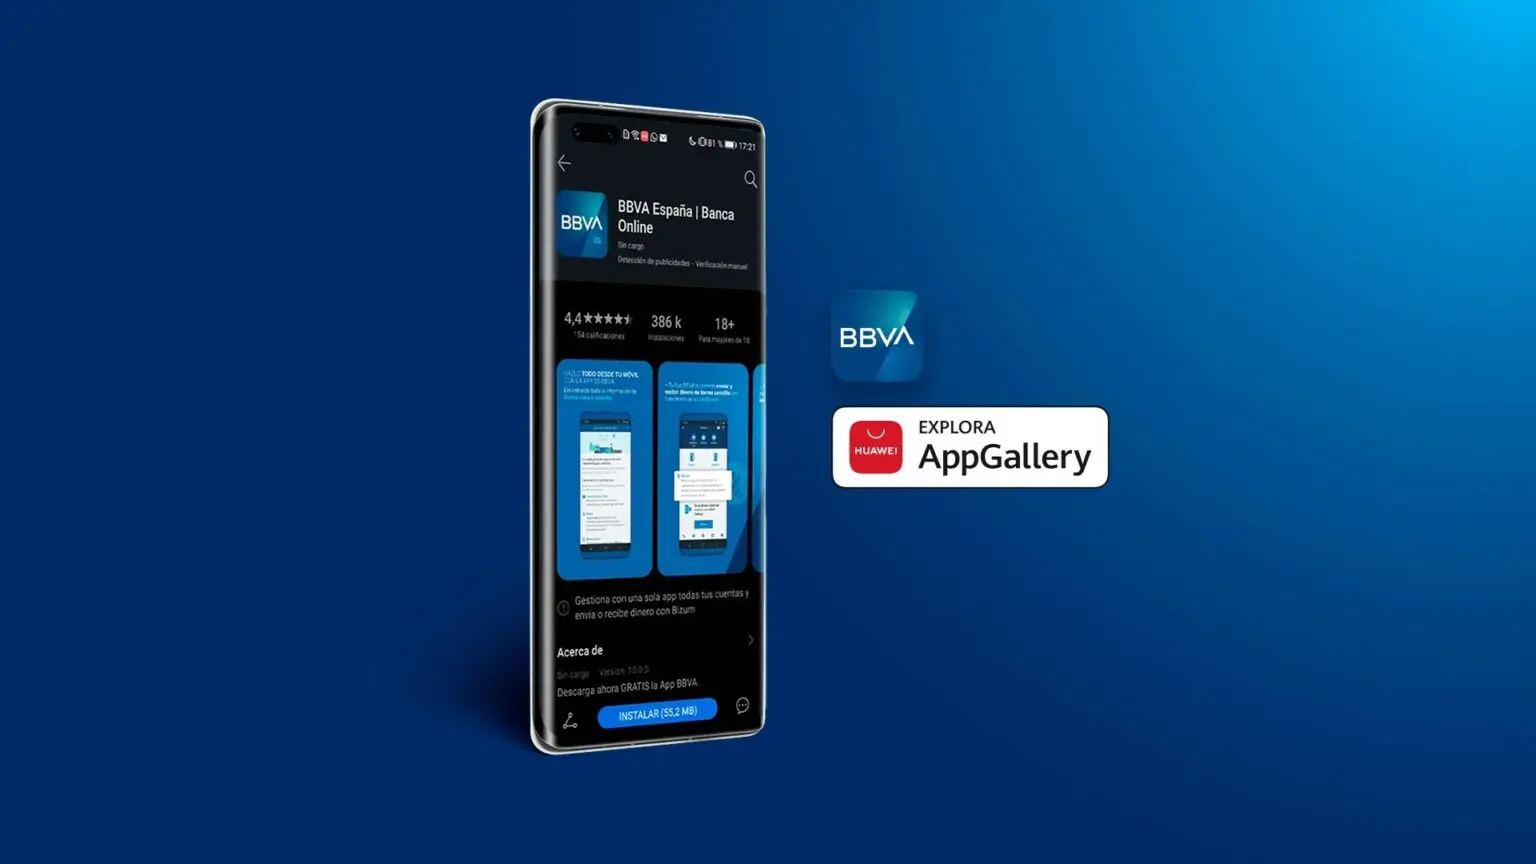 Si tienes un celular Huawei ya puedes descargar la app de BBVA en AppGallery